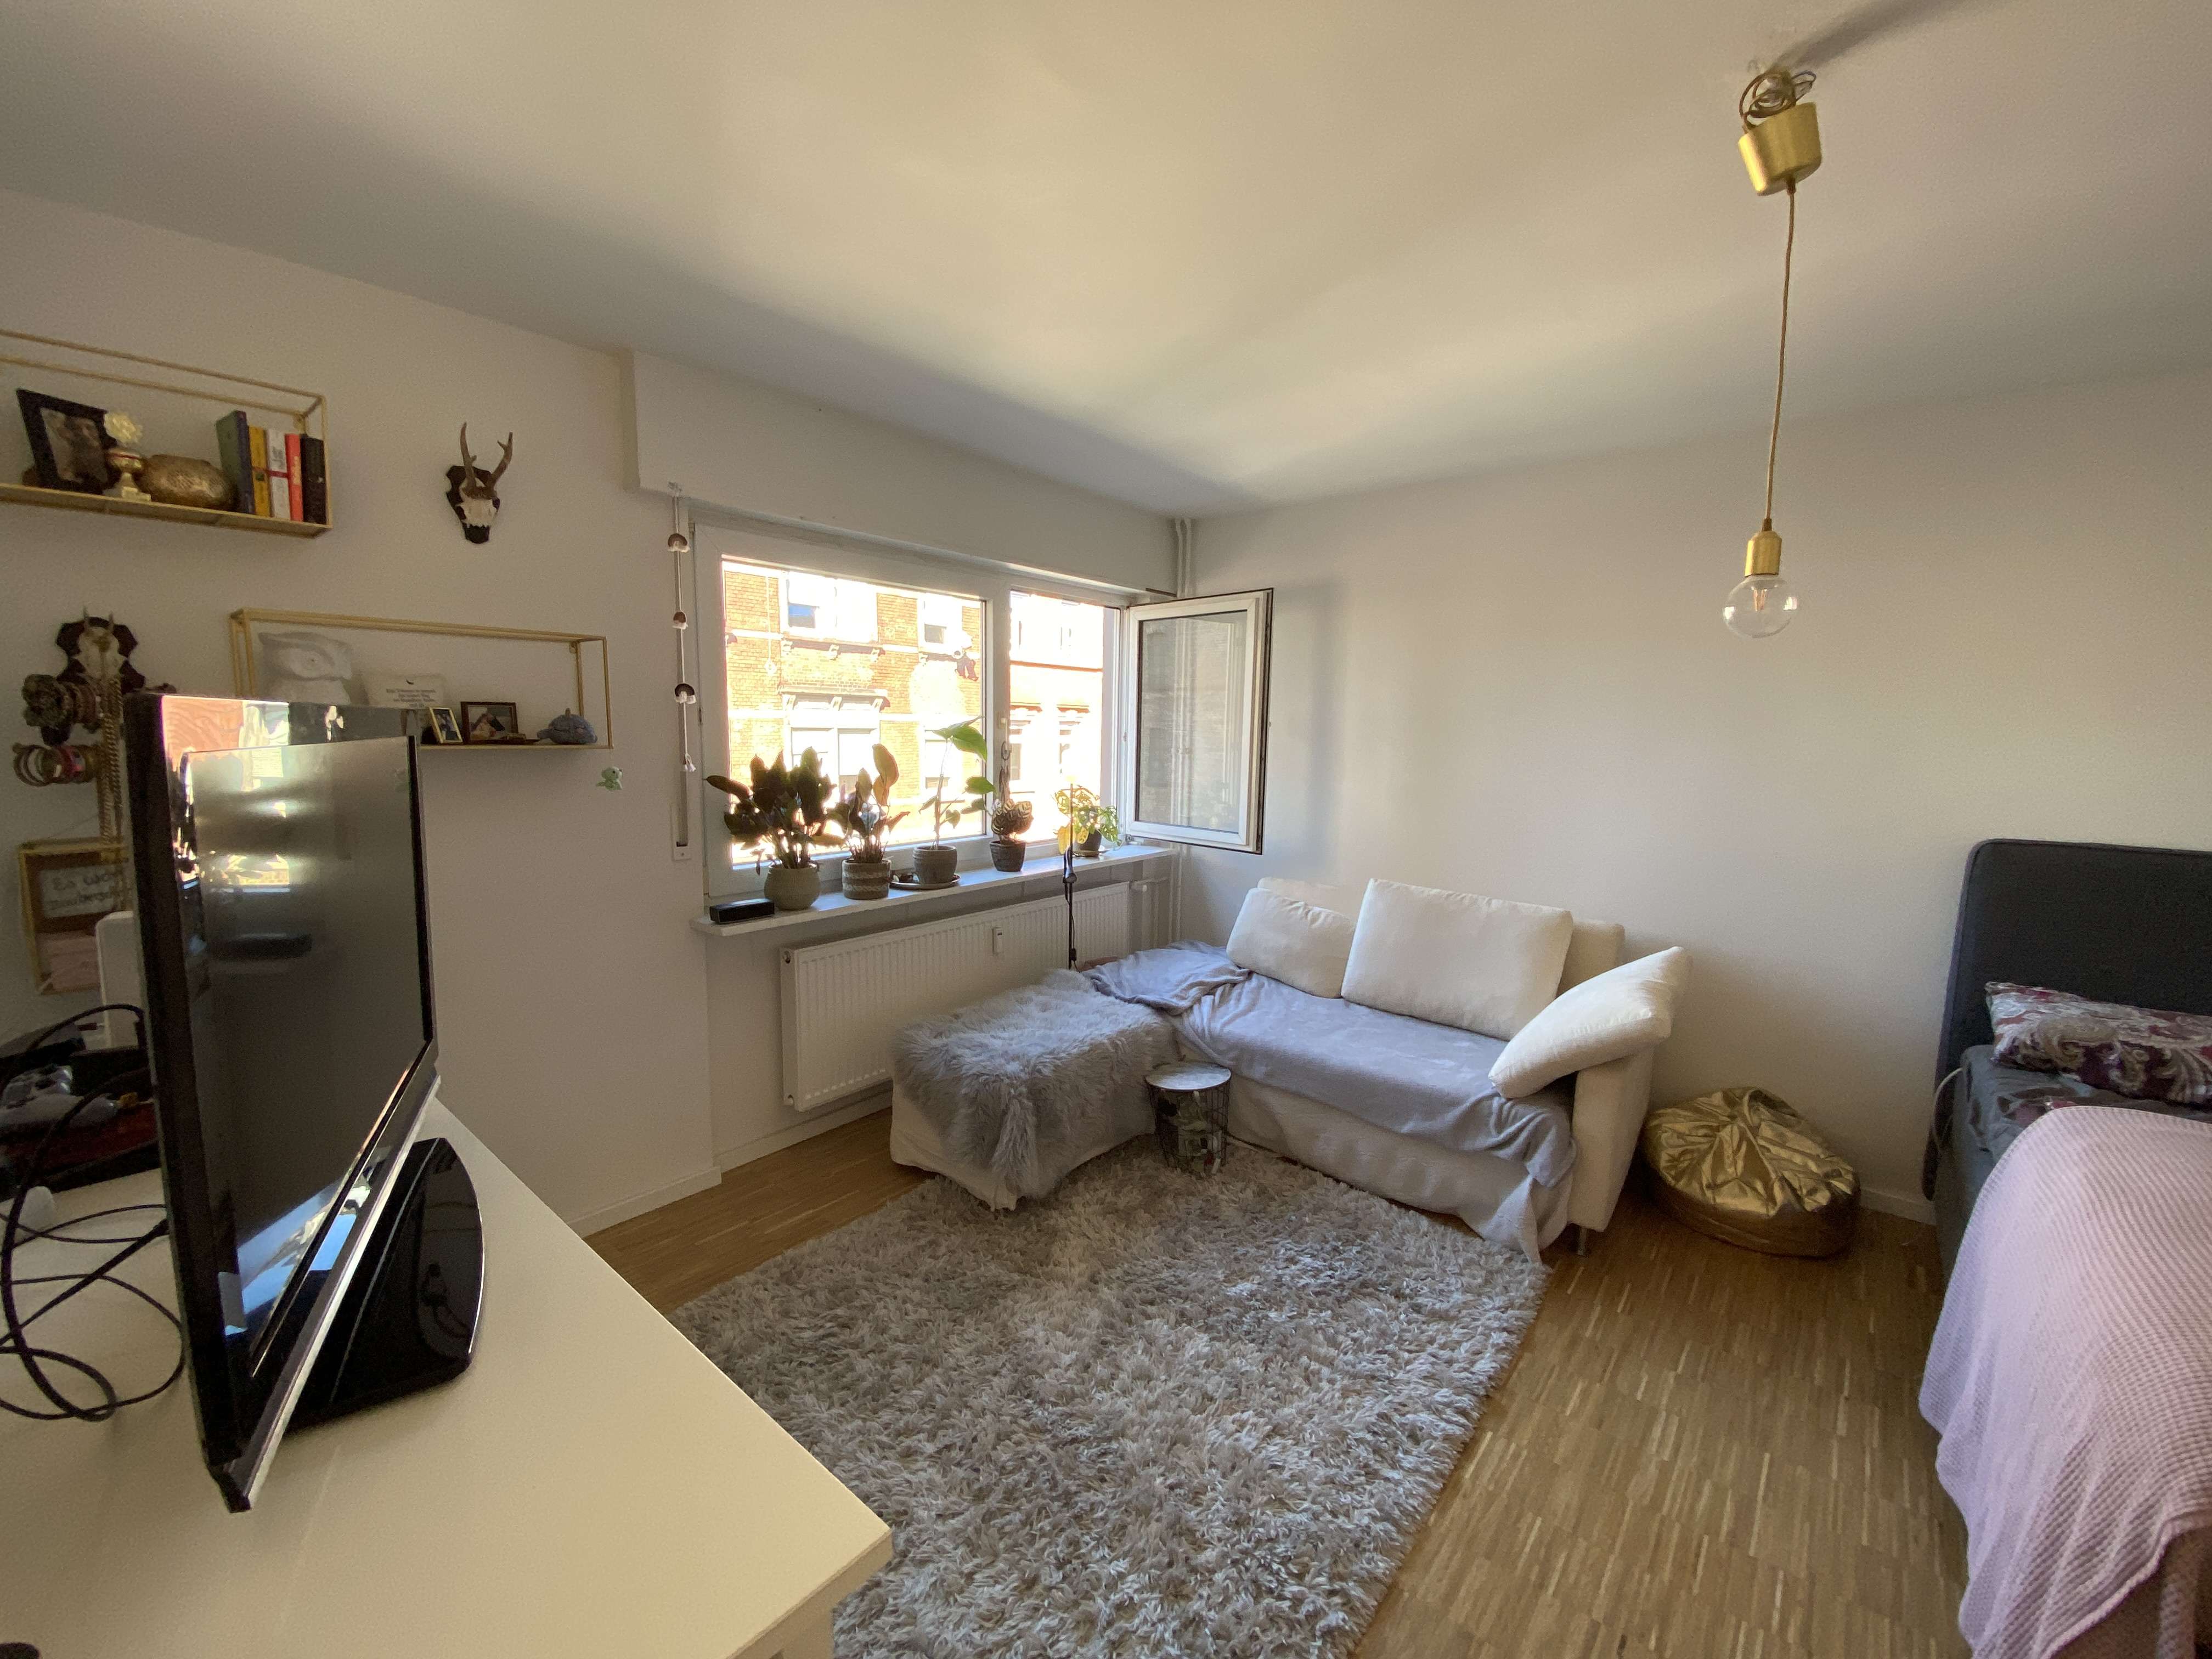 Wohnung zum Mieten in Mannheim 700,00 € 44 m²